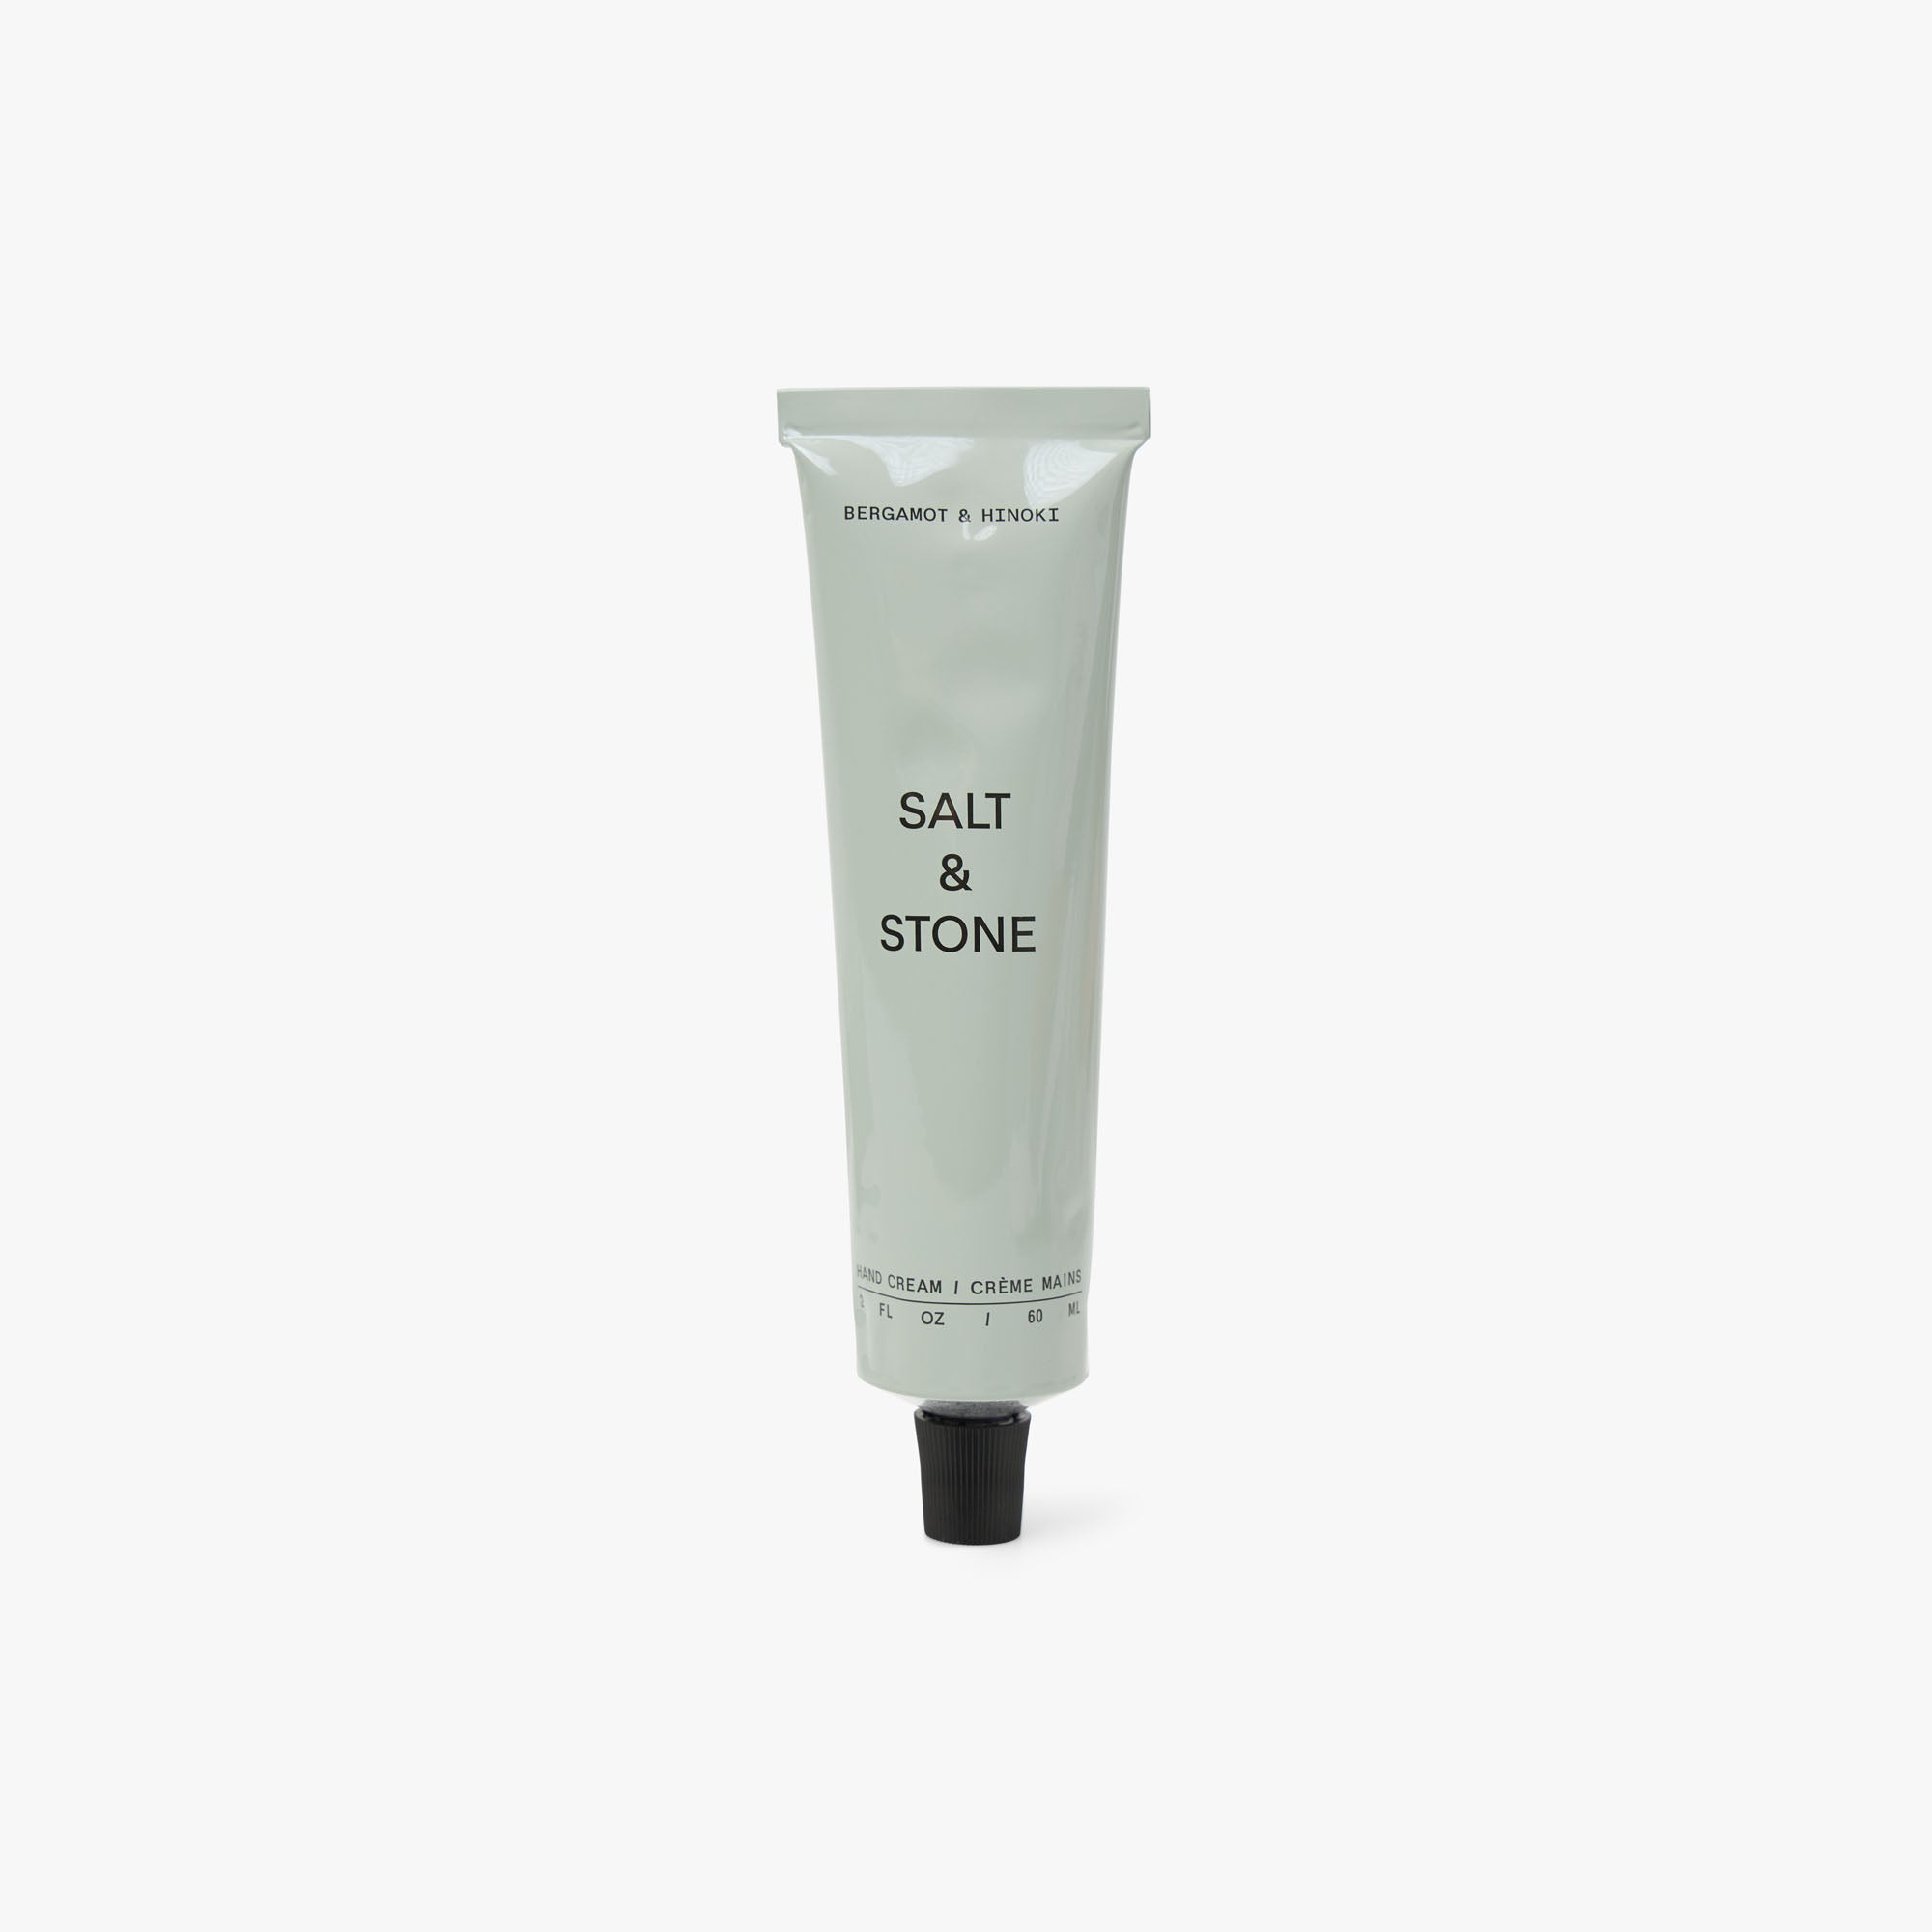 SALT & STONE Hand Cream / Bergamot & Hinoki 1